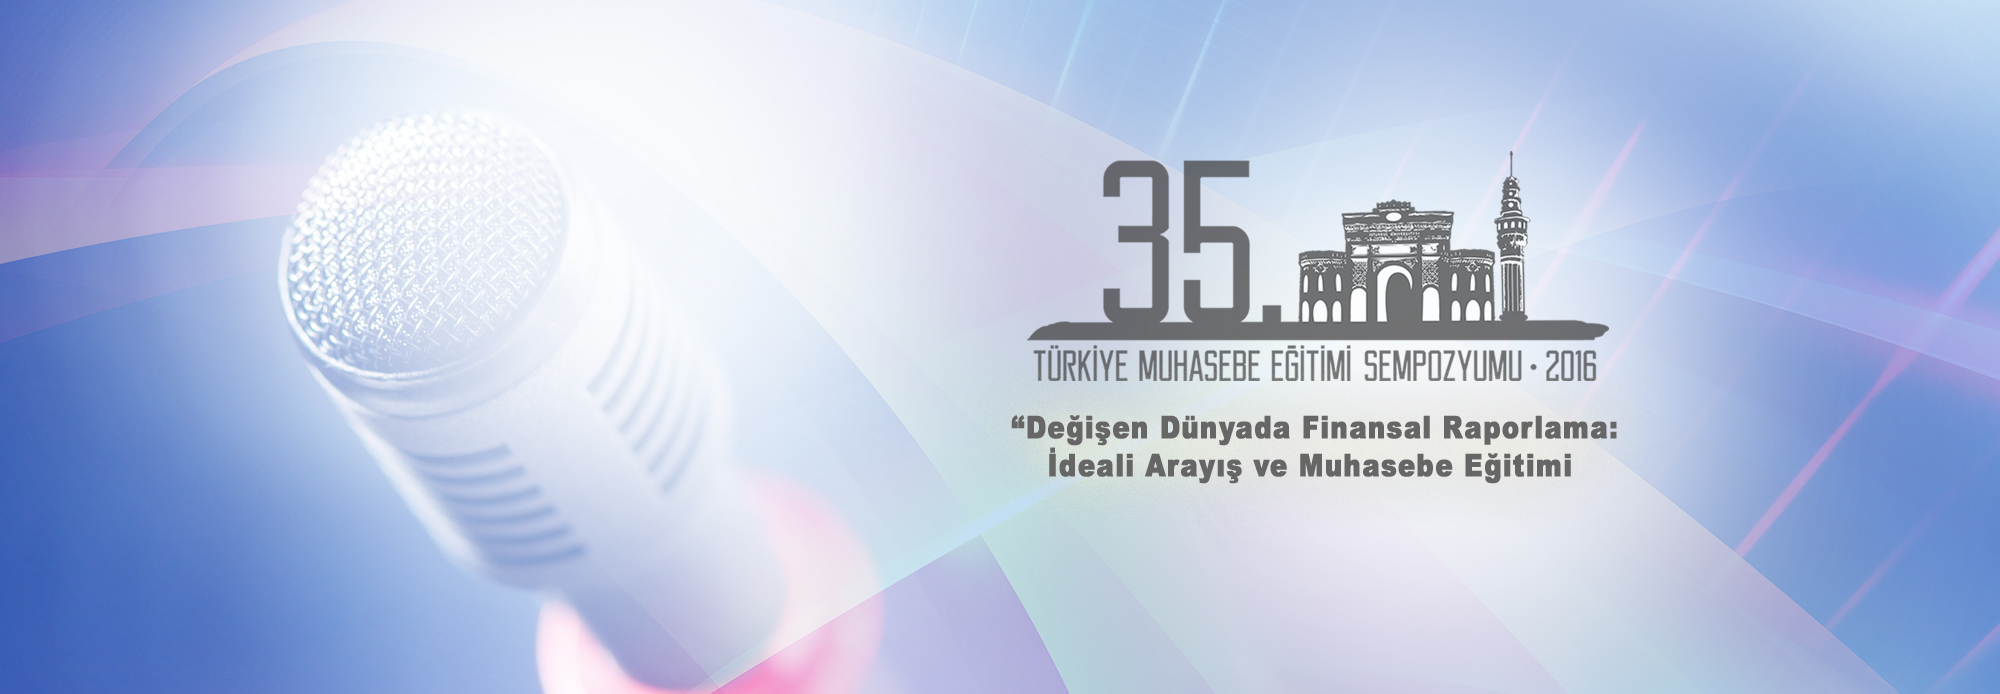 35. Türkiye Muhasebe Eğitimi Sempozyumu - 2016